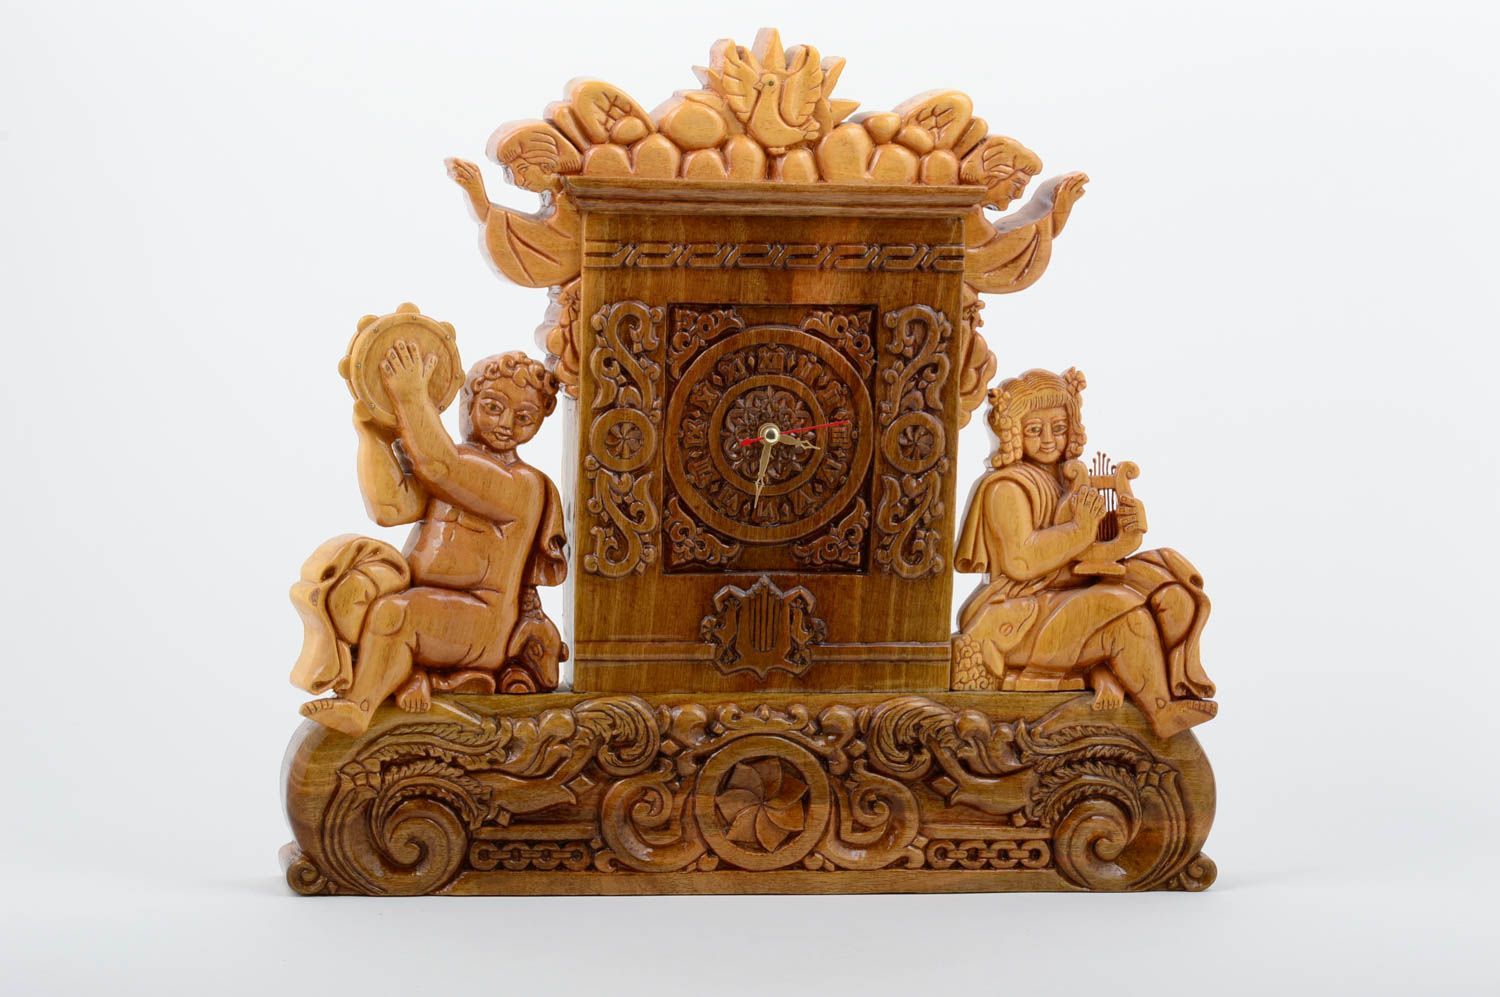 Handmade Deko Uhr aus Holz ungewöhnliche Uhr geschnitzt schön Tisch Uhr exklusiv foto 1